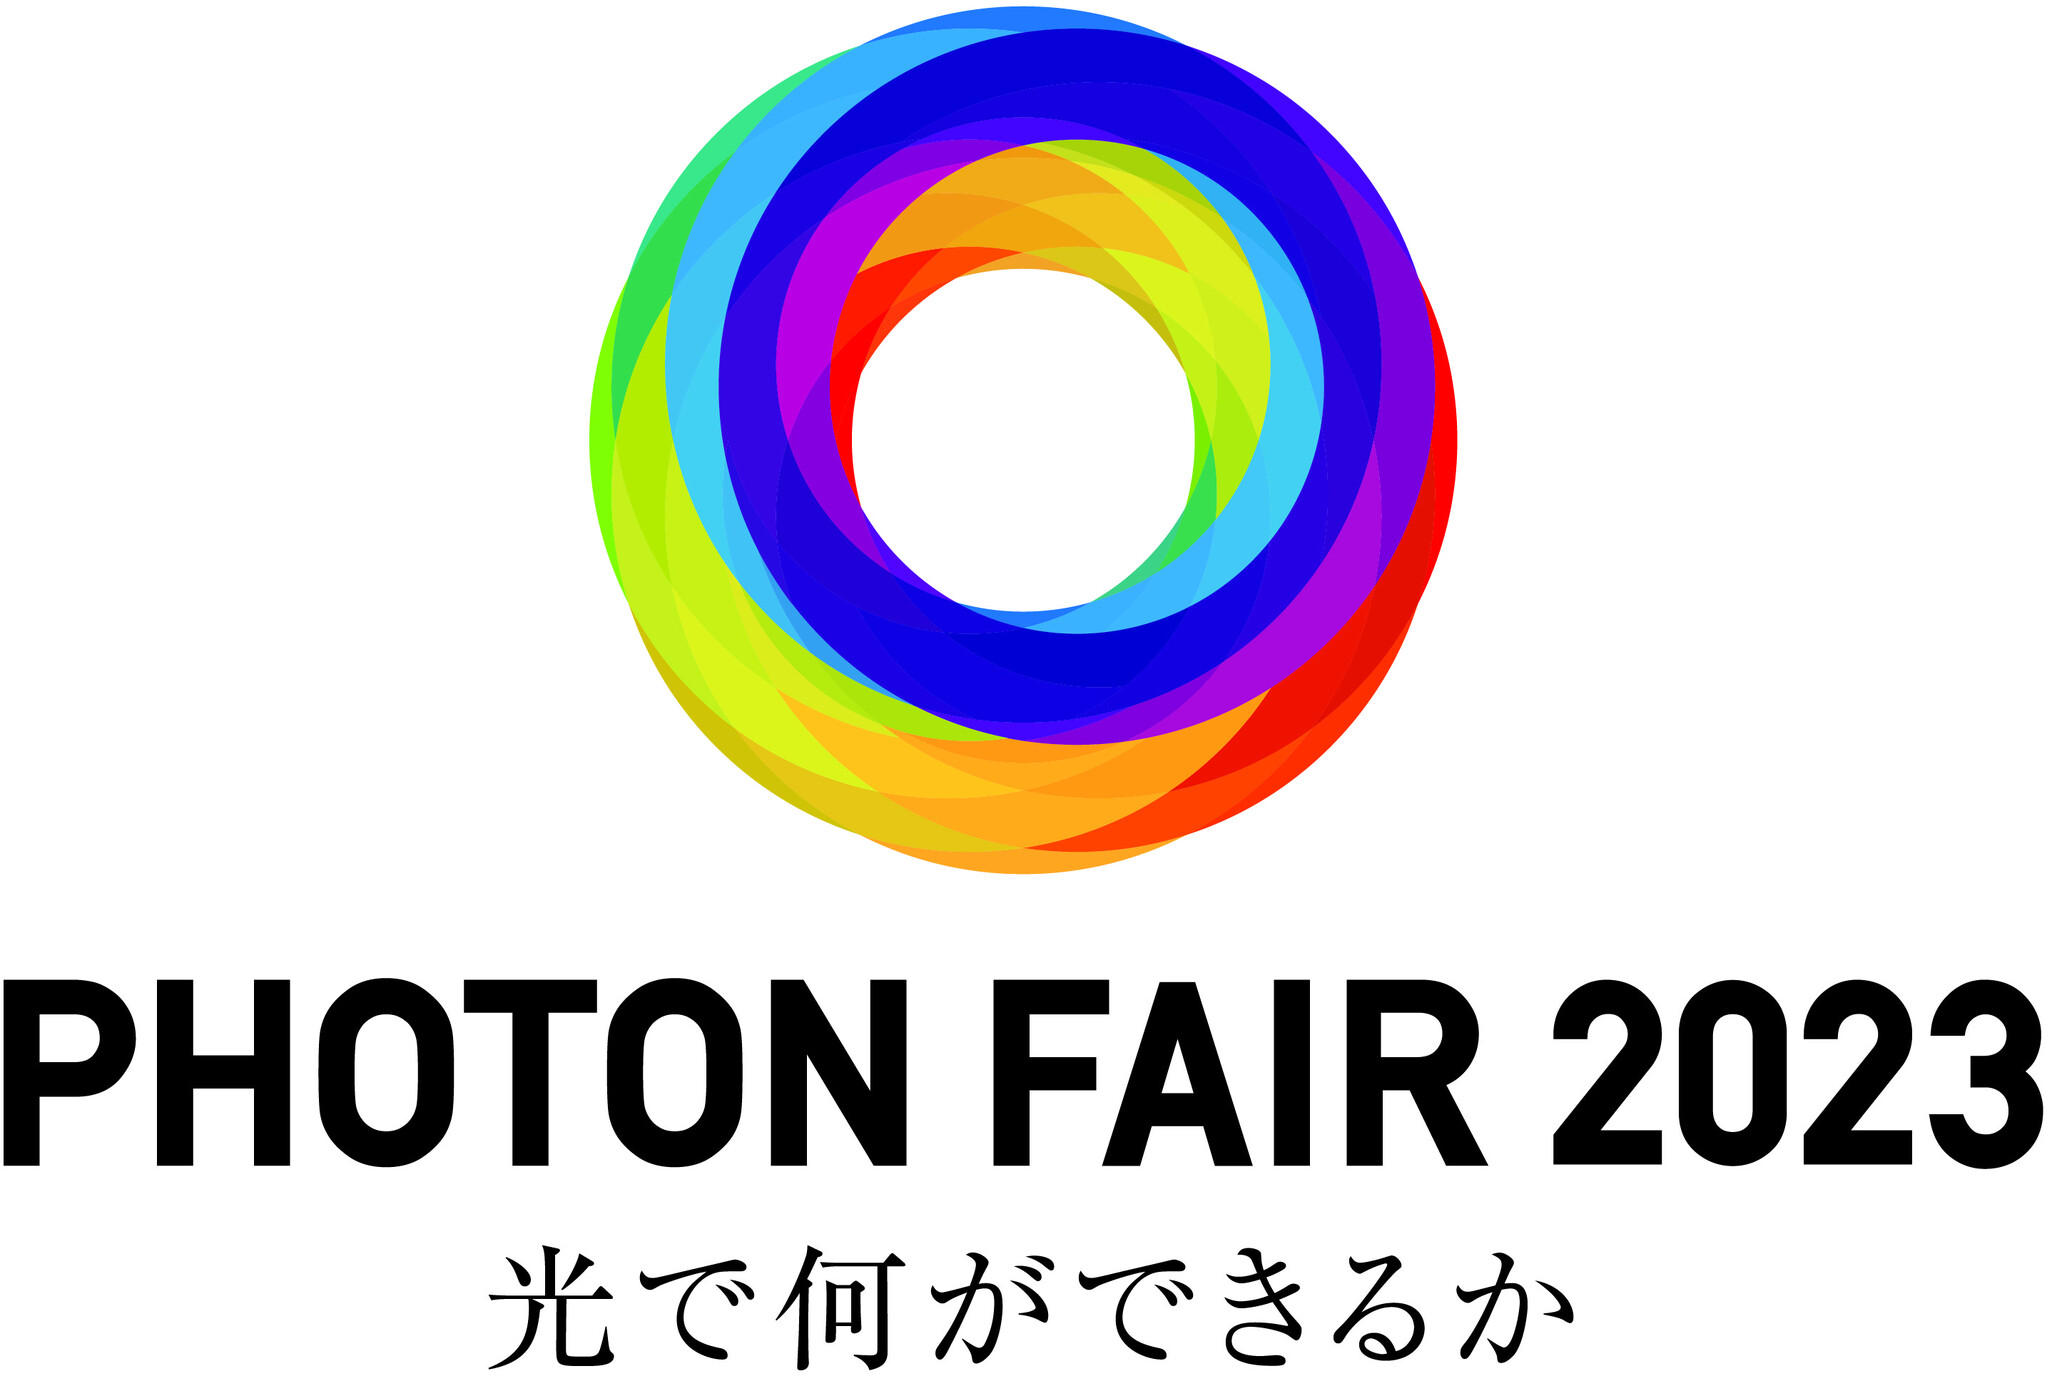 11月16日から「PHOTON FAIR 2023」を開催｜浜松ホトニクス株式会社のプレスリリース